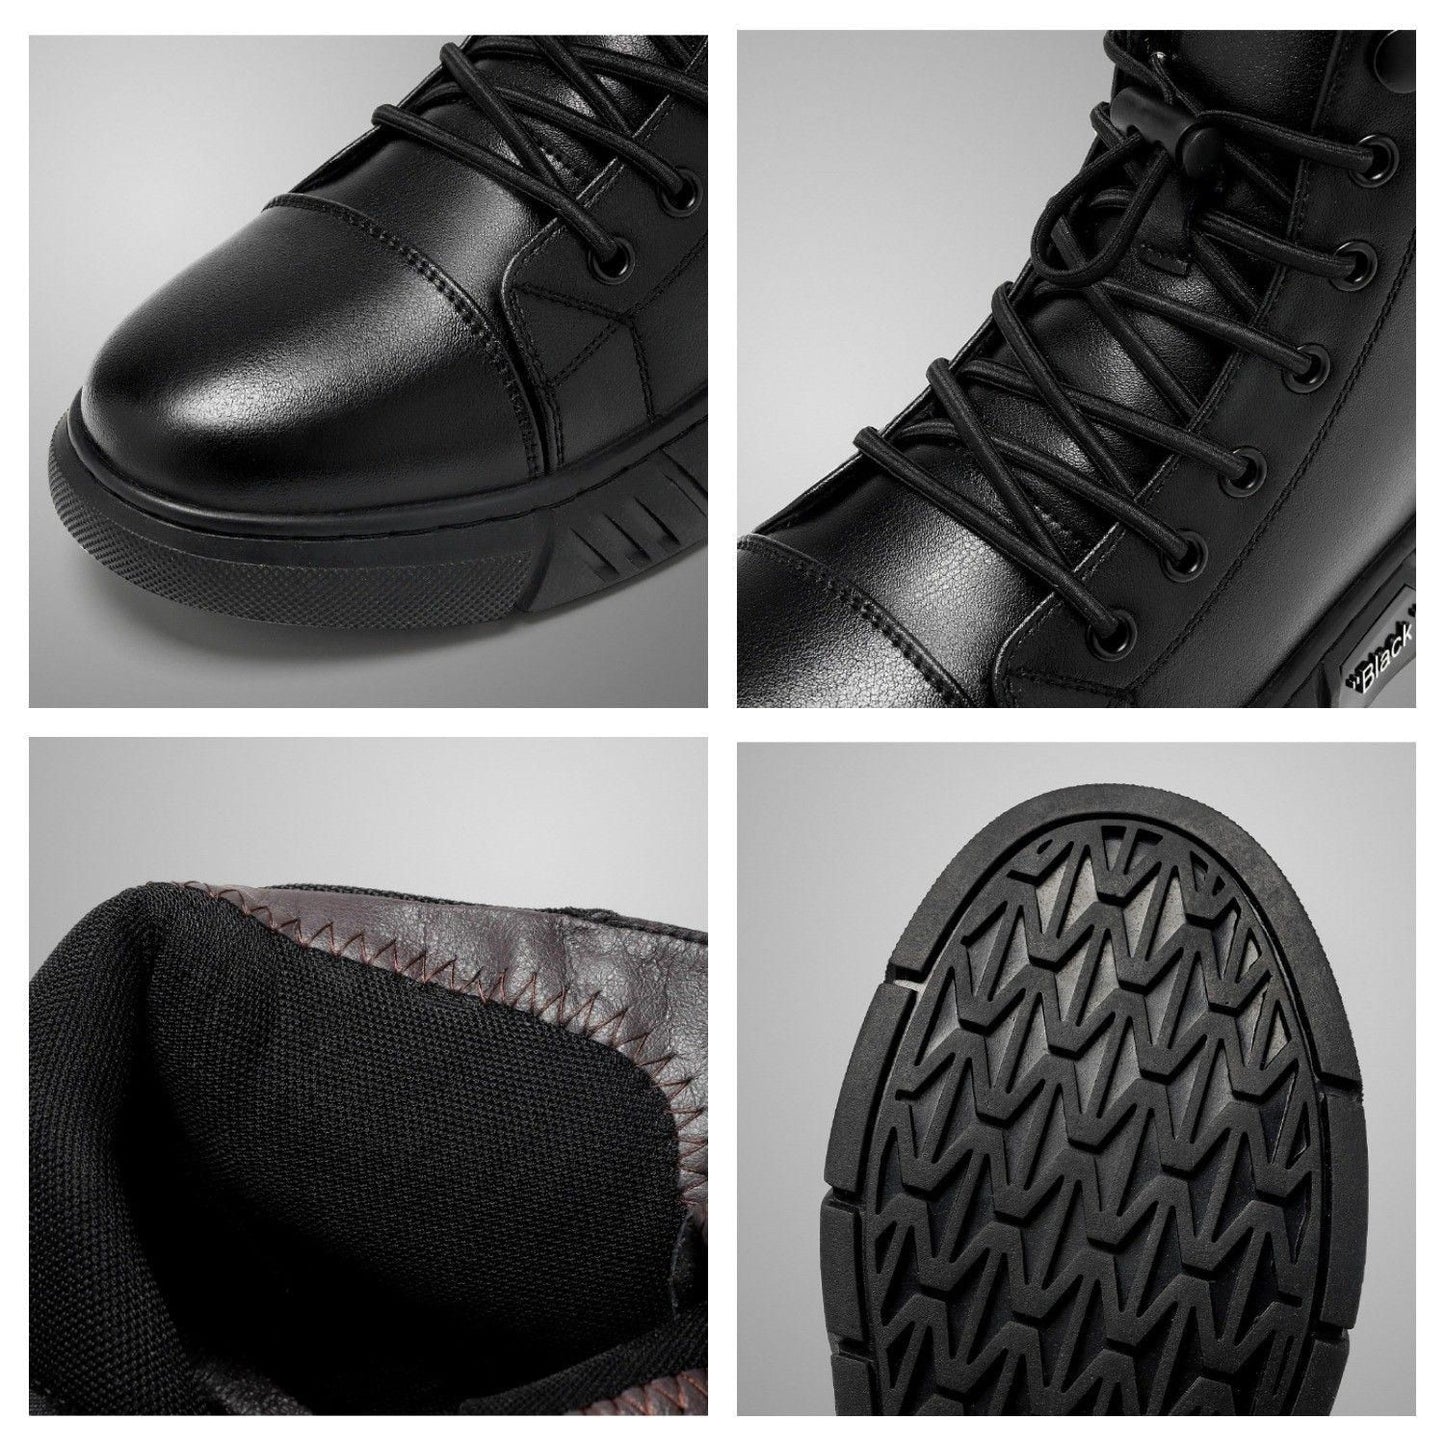 Richale Trending Black Leather Boot For Men